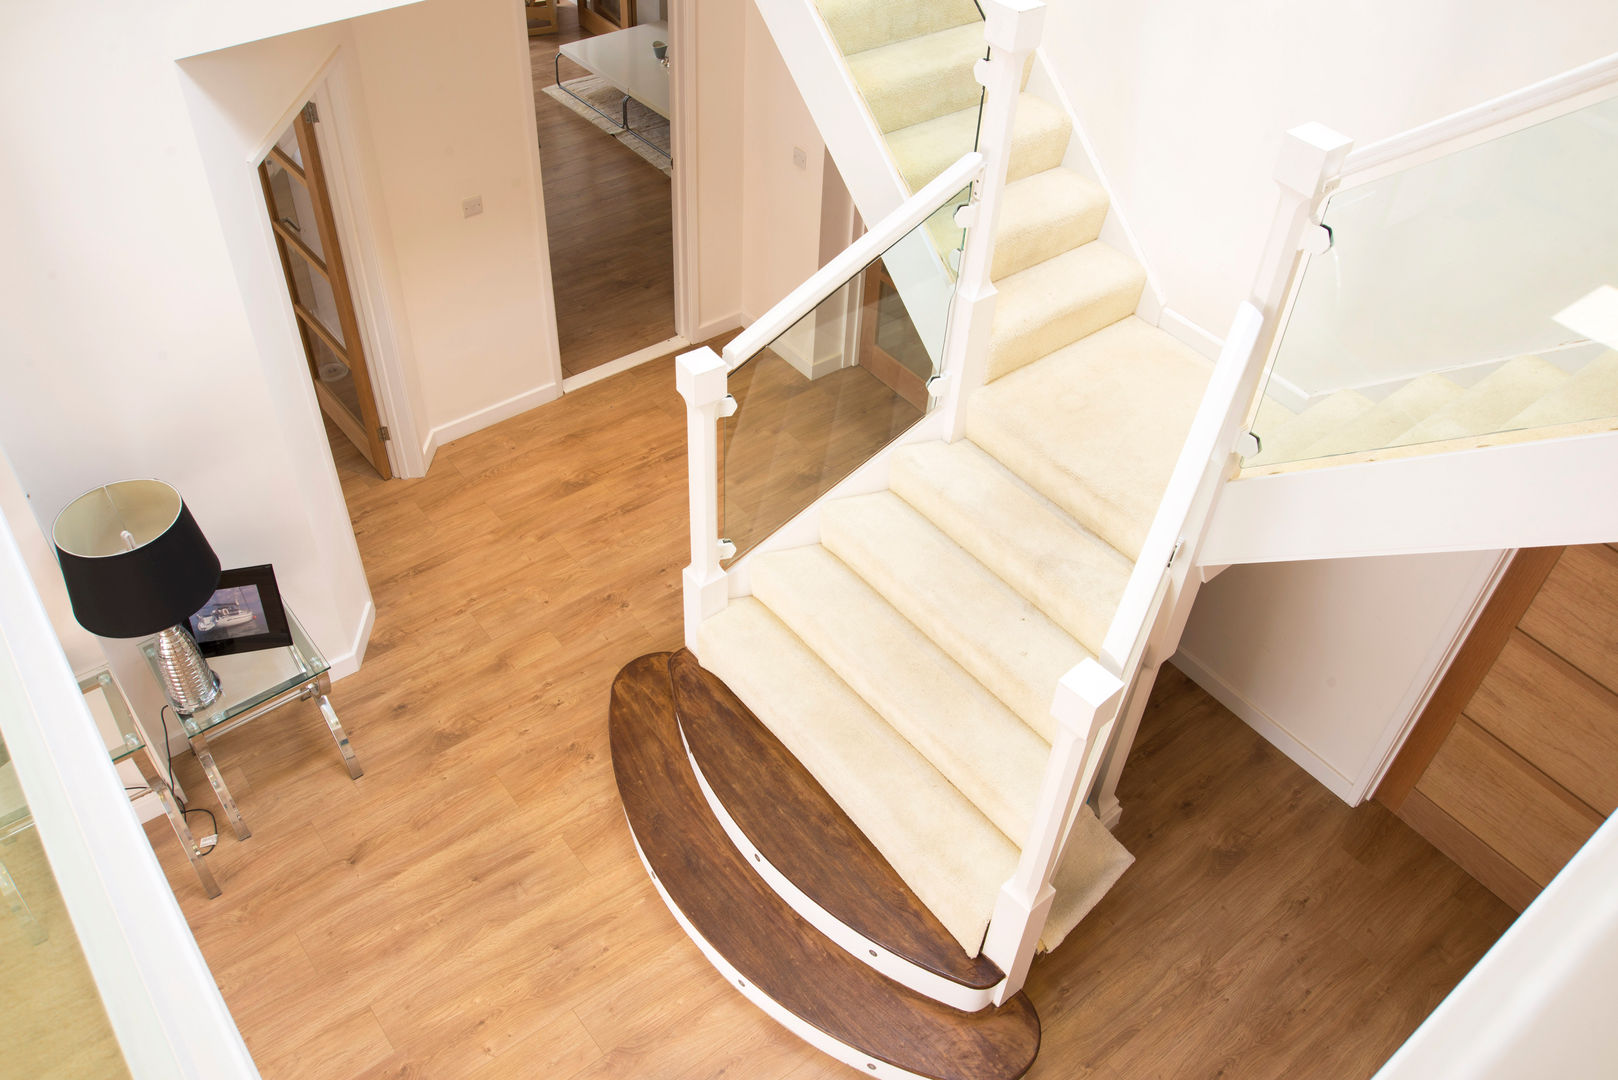 Stairs dwell design Koridor & Tangga Modern